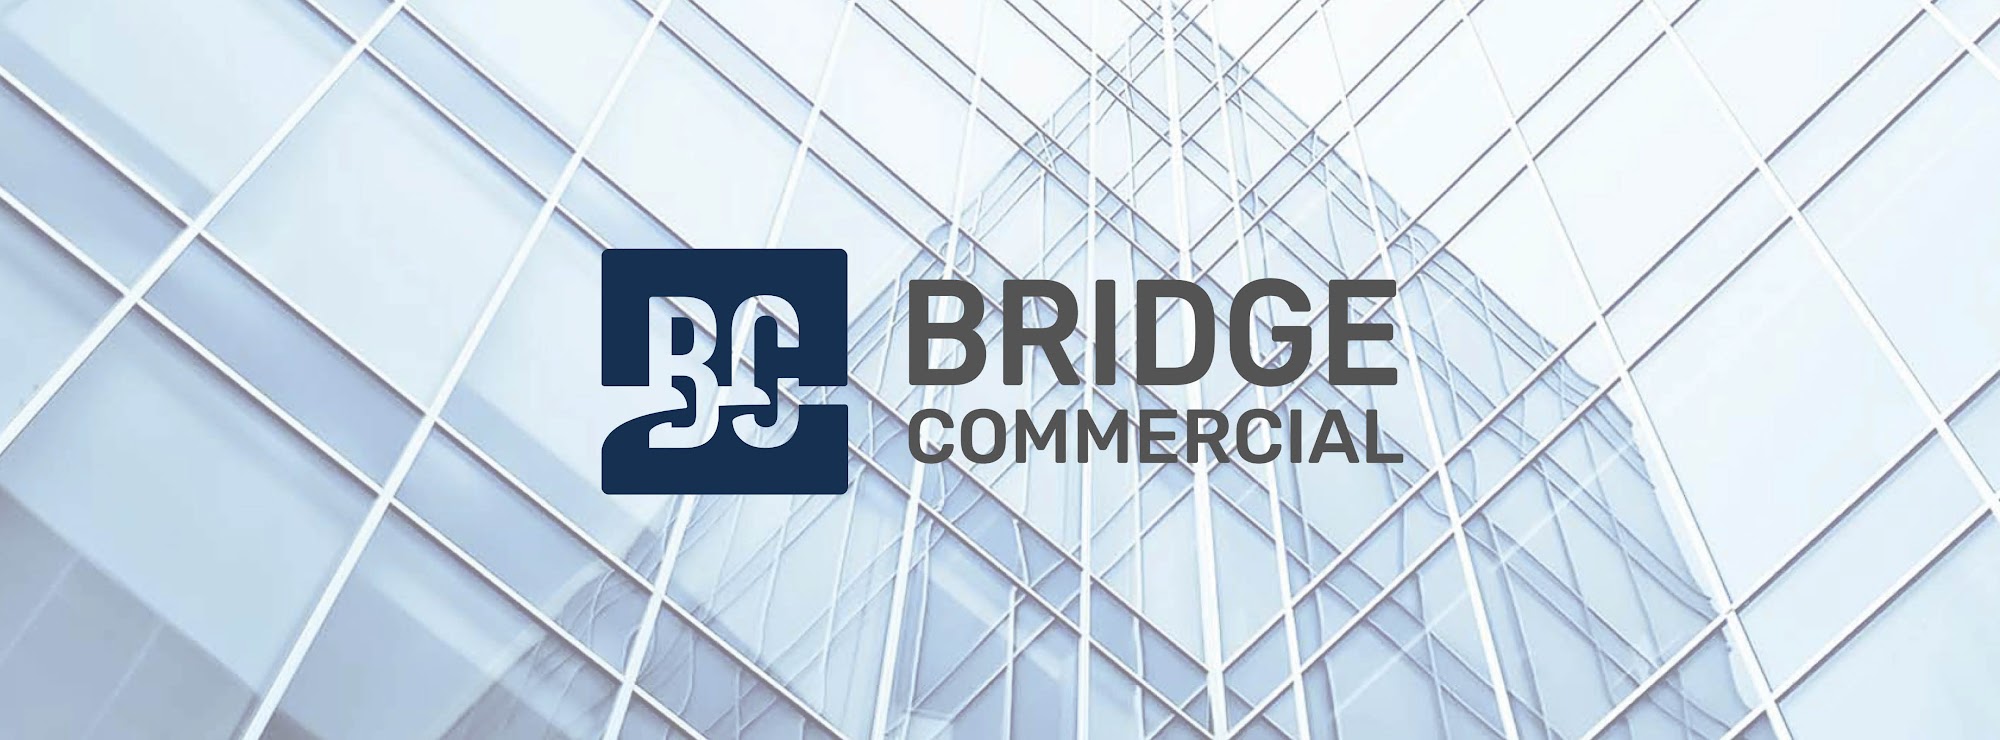 Bridge Commercial